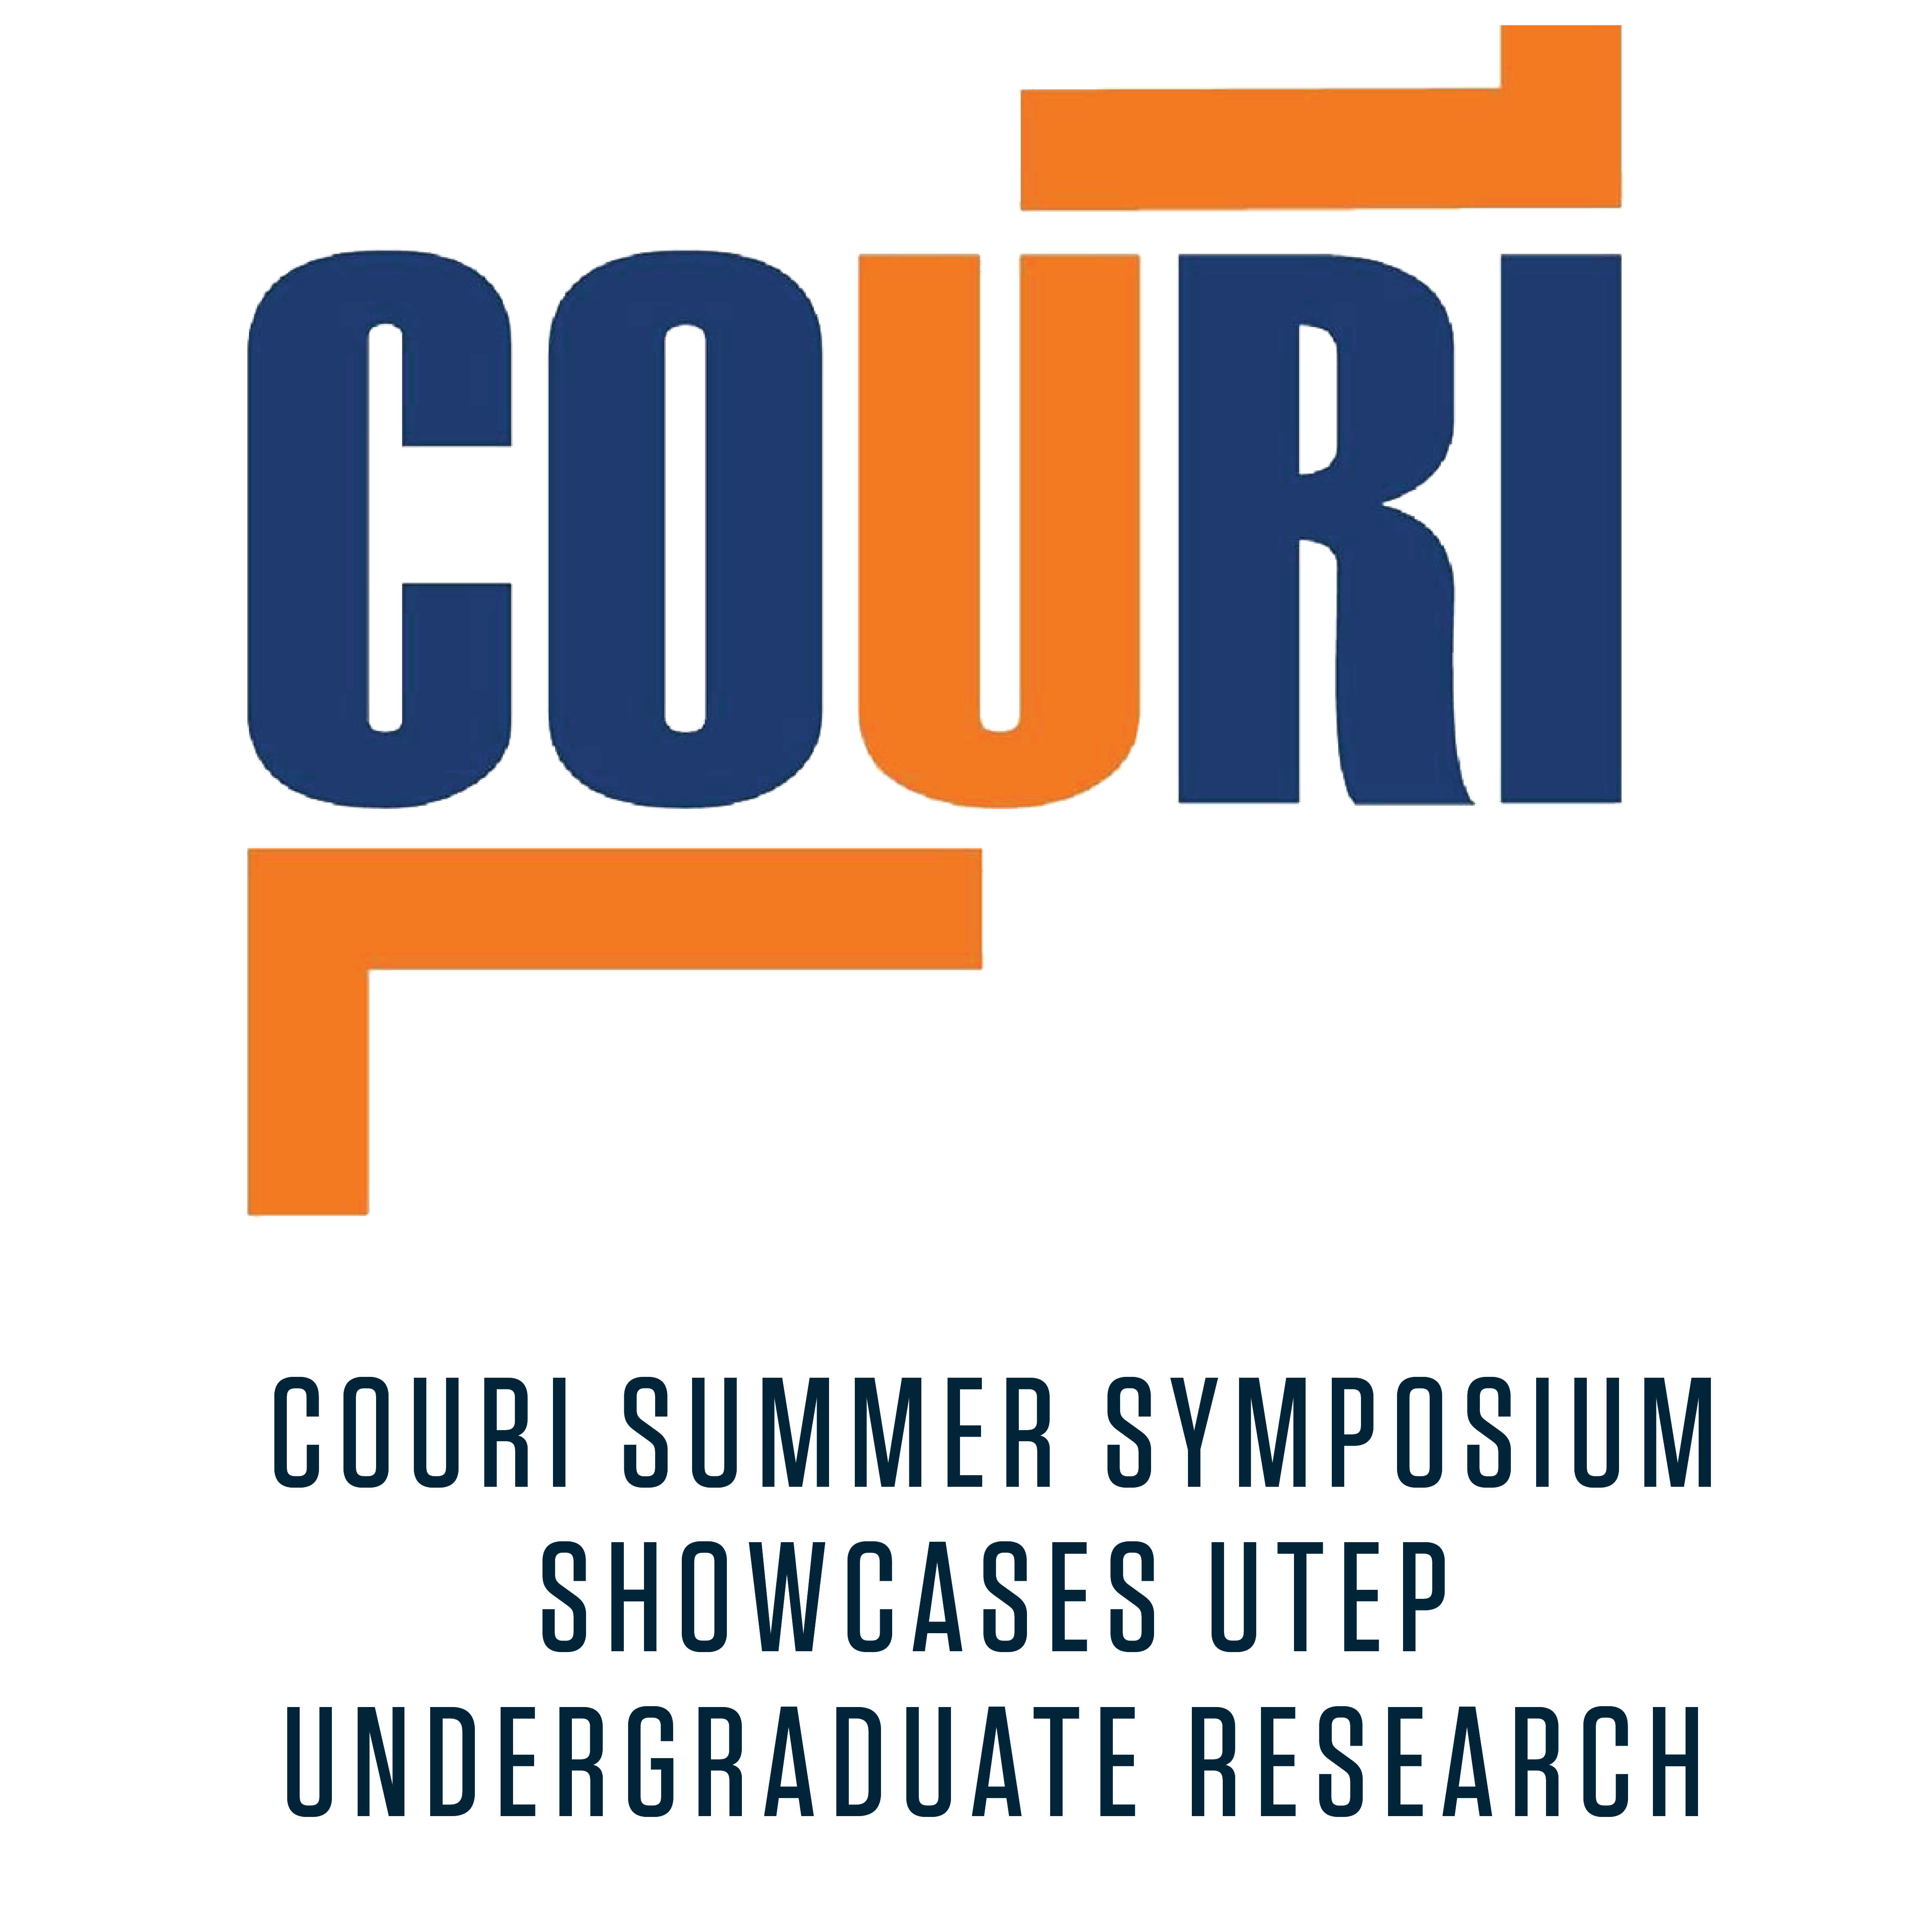 COURI Summer Symposium Showcases UTEP Undergraduate Research